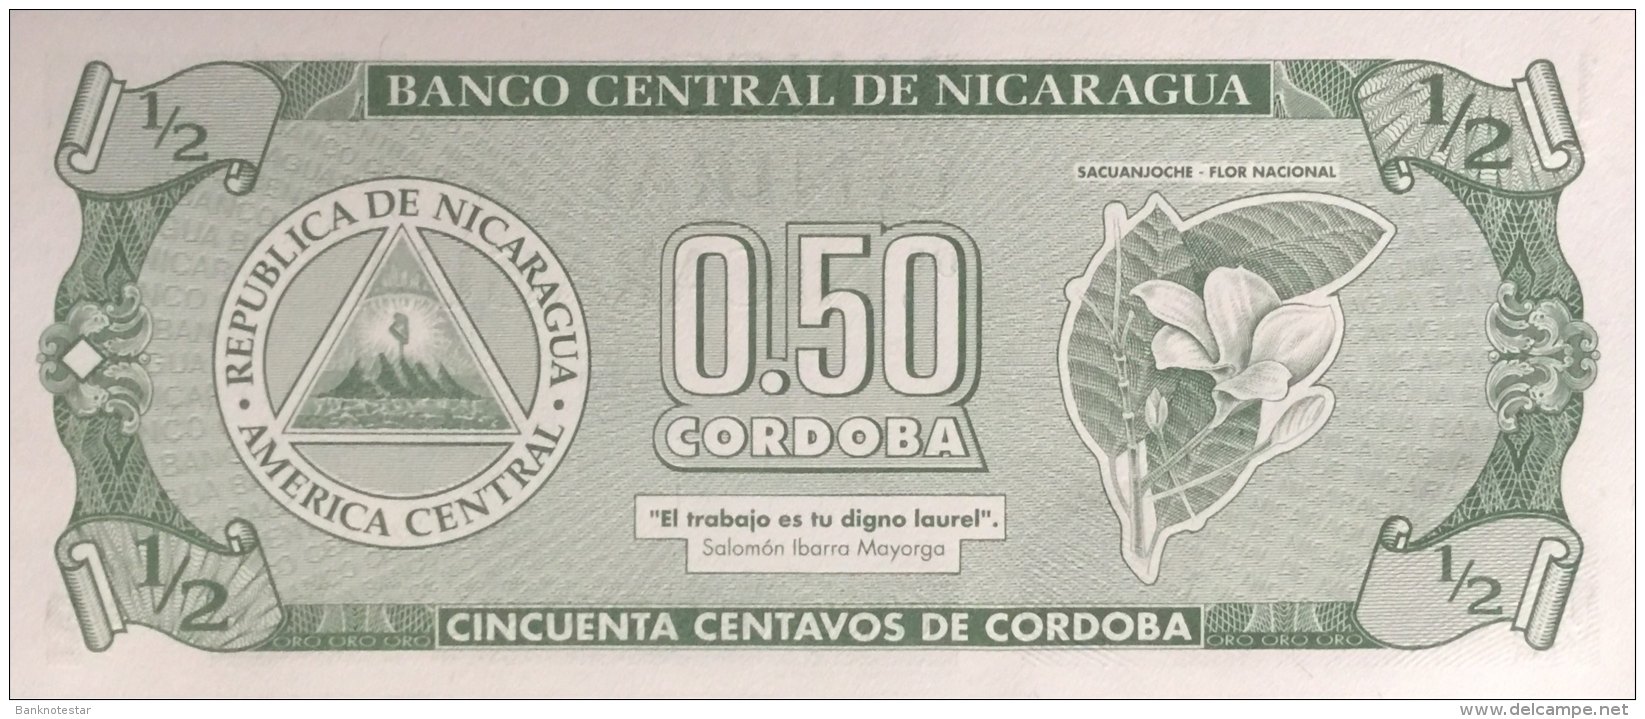 Nicaragua 1/2 Cordoba, P-172 (1992) - UNC - Nicaragua